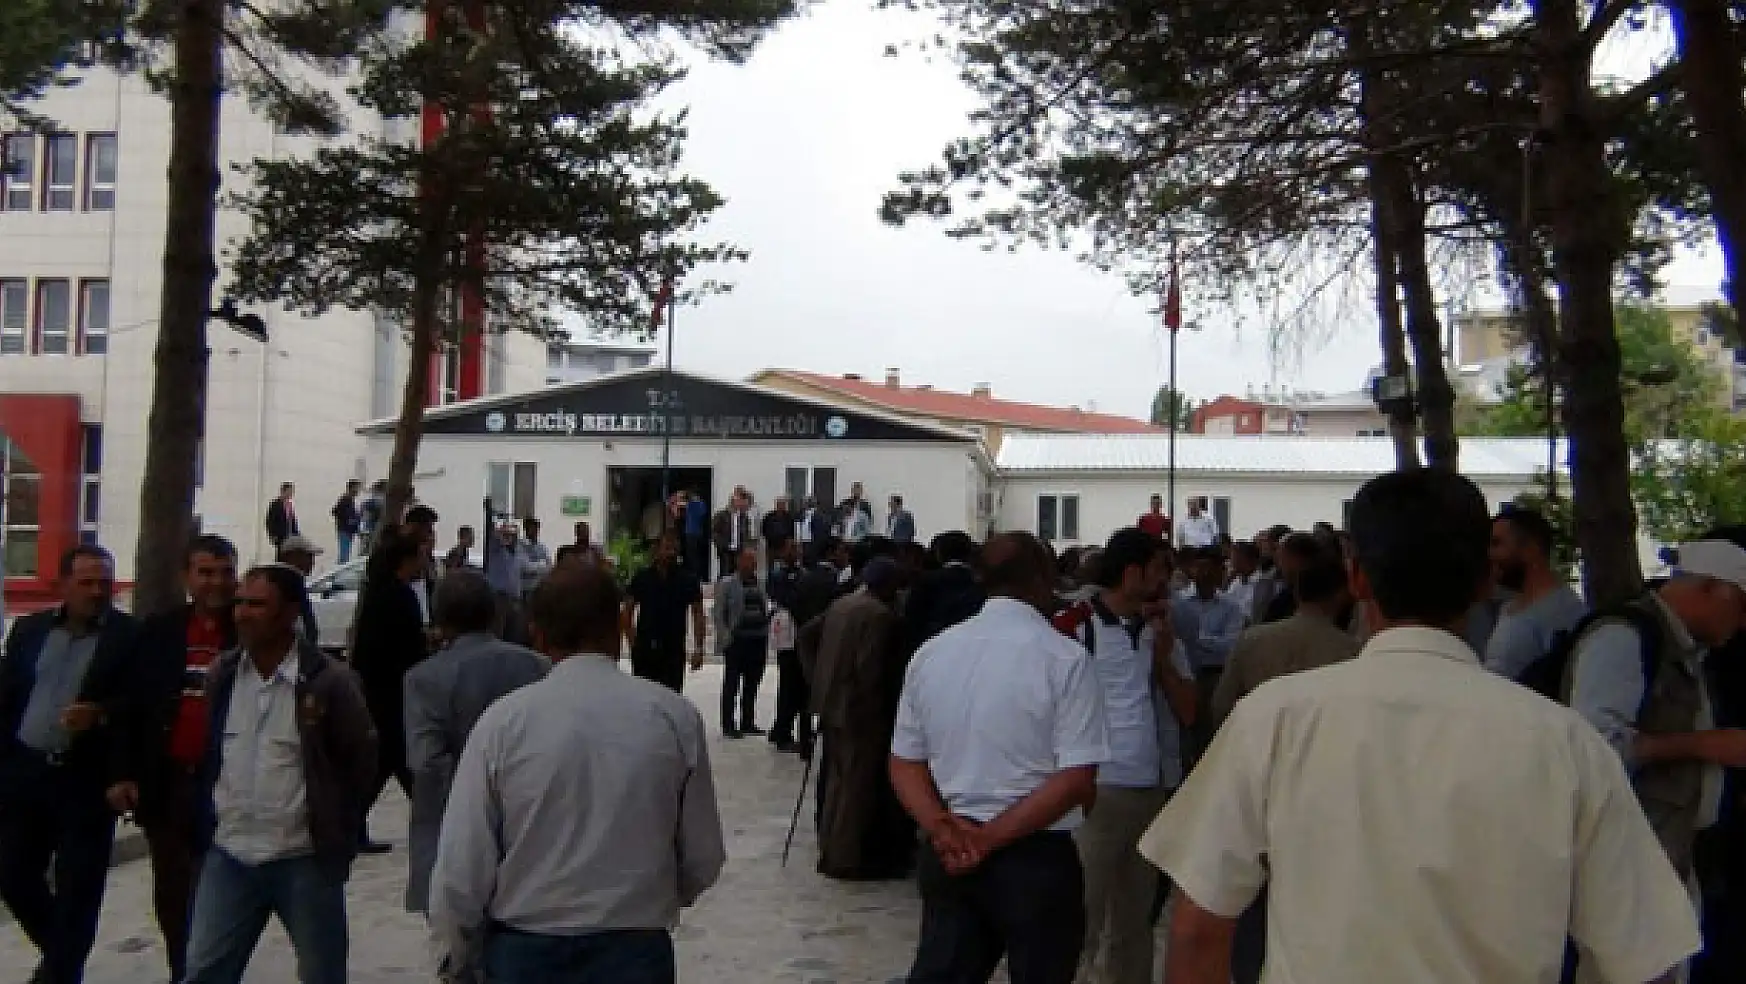 Erciş Belediyesi'nde Personel Depremi